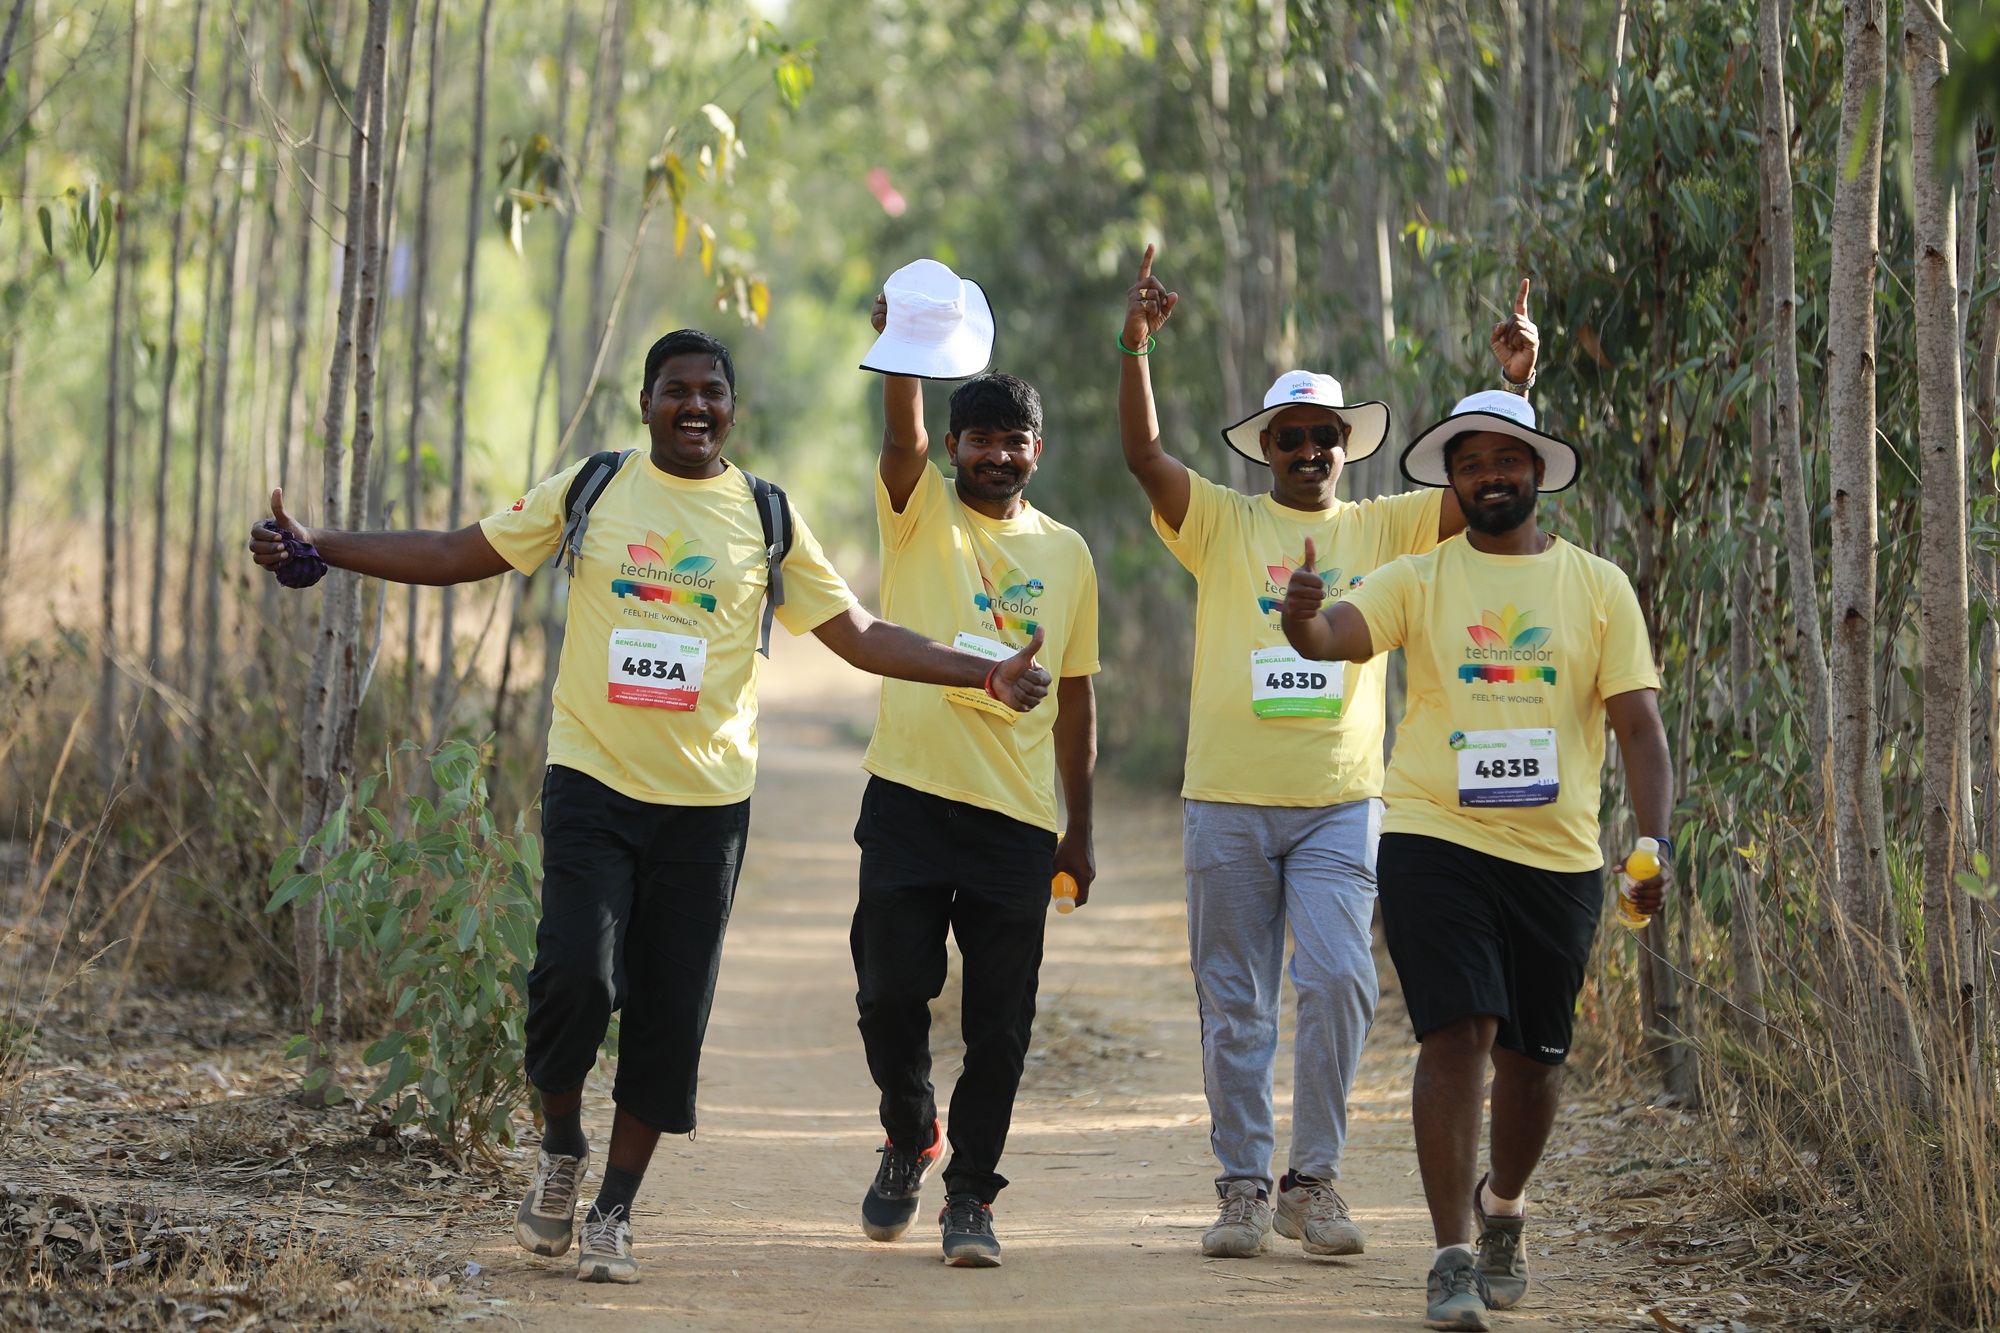 Oxfam Trailwalker India held in Bengaluru